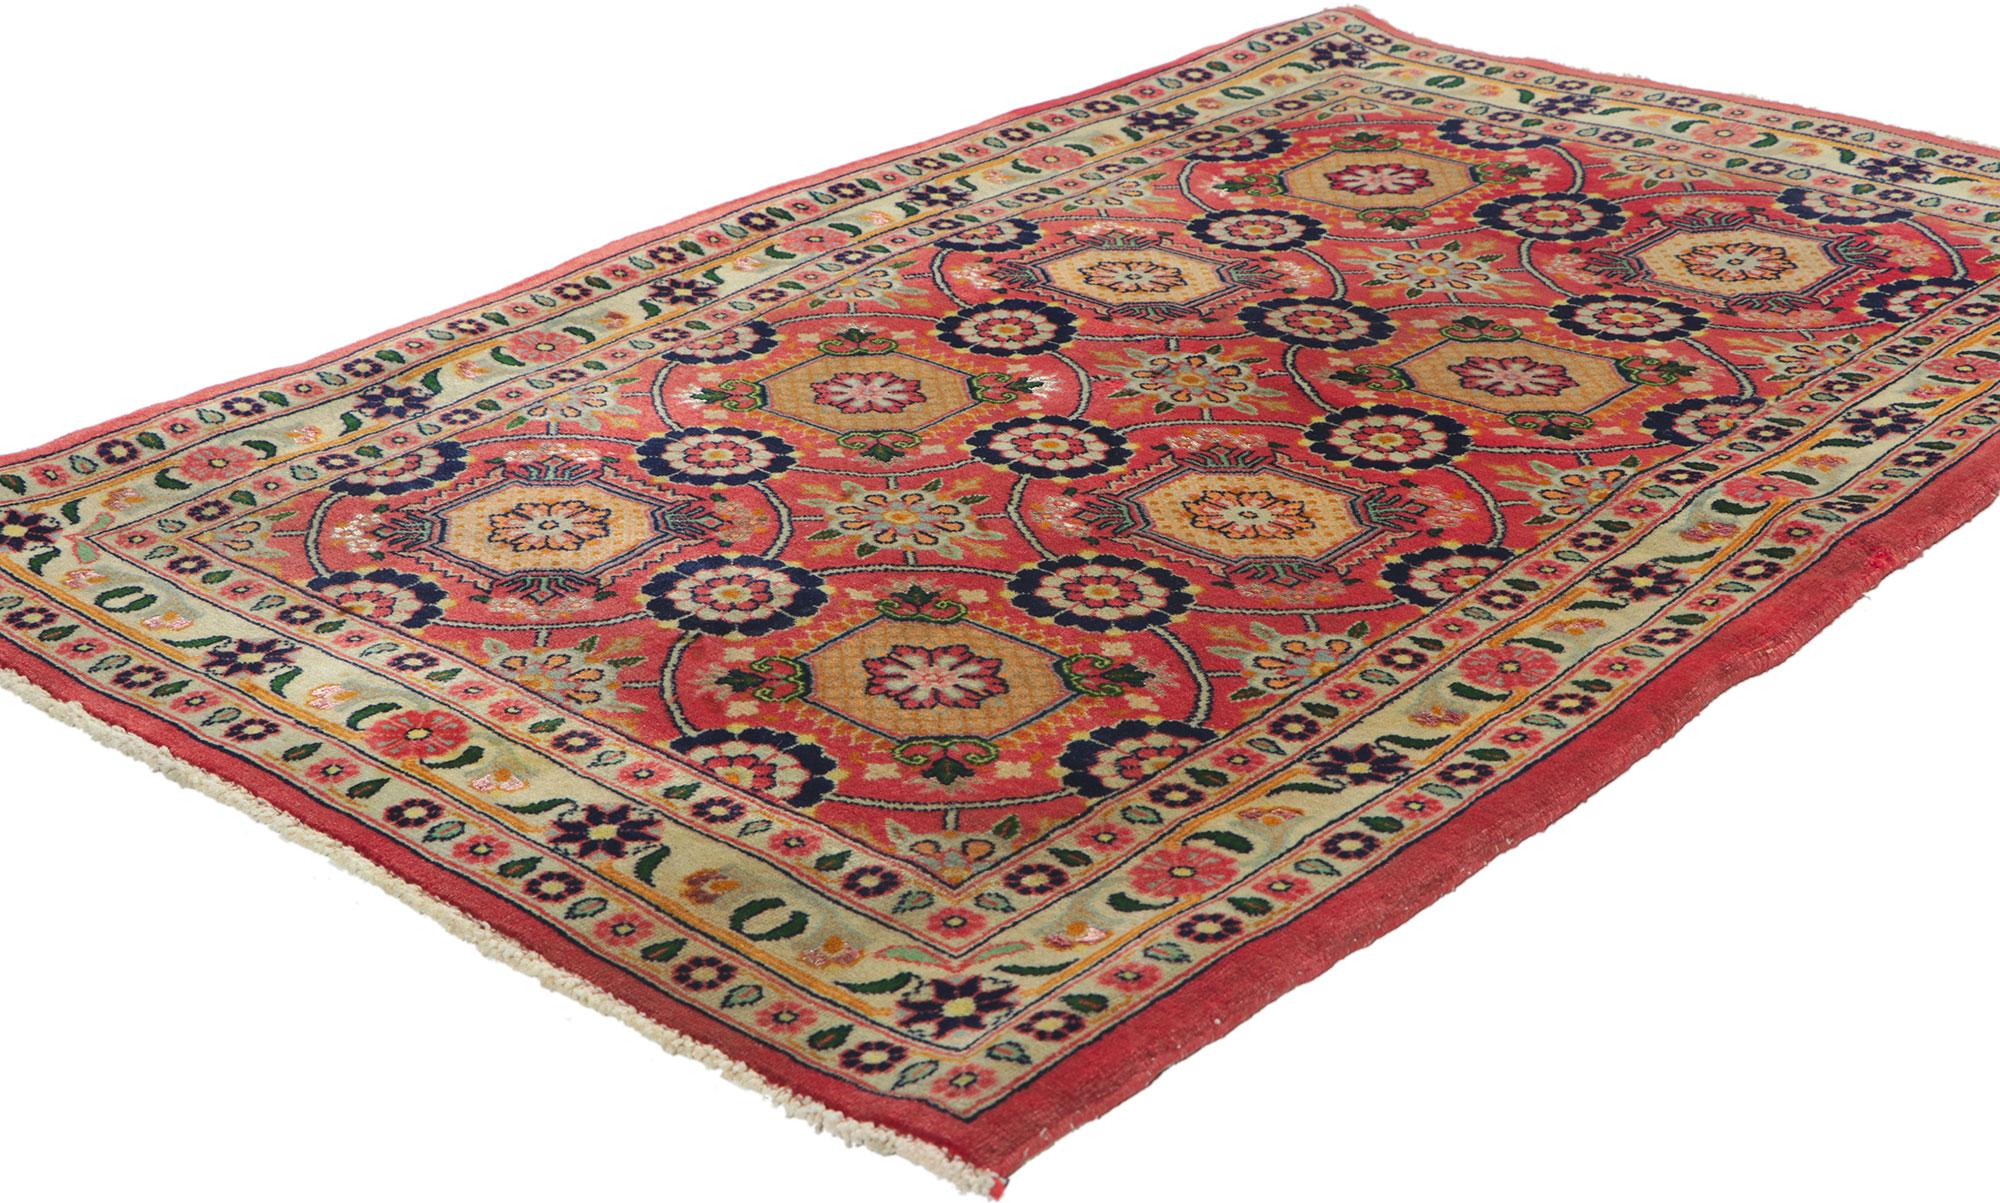 61041 Vintage Persisch Bijar Teppich, 02'07 x 03'11. Begeben Sie sich auf eine bezaubernde Odyssee maurischer Eleganz mit diesem handgeknüpften persischen Bijar-Teppich aus Wolle im Vintage-Stil. Diese magische Teppichfahrt ist eine Reise in eine